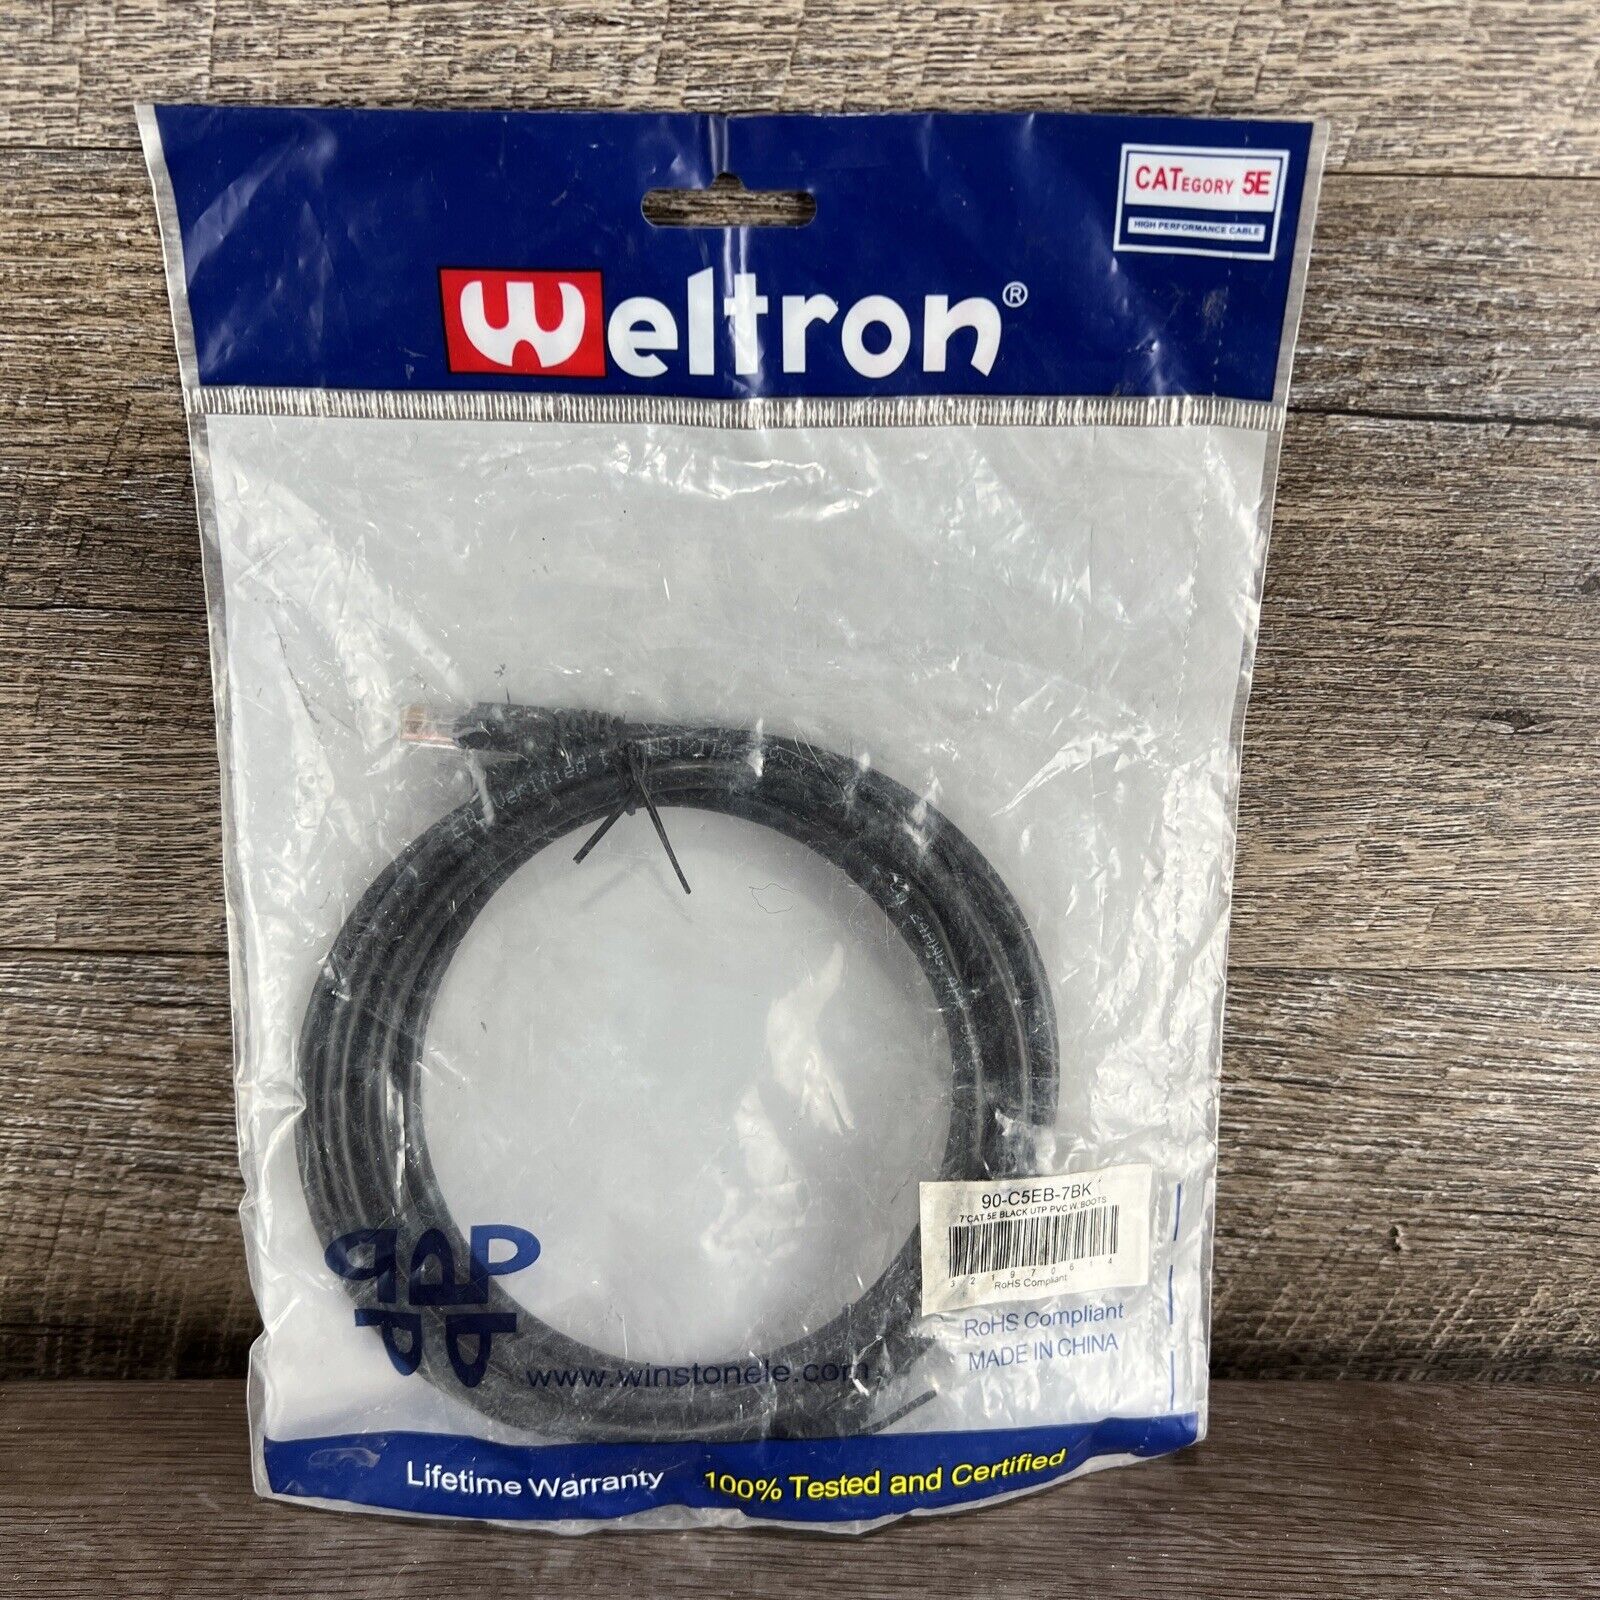 Weltron 90-C5E-7BK 7' Cat 5  UTP PVC w/Boots Patch Cable BLK New RoHS Compliant